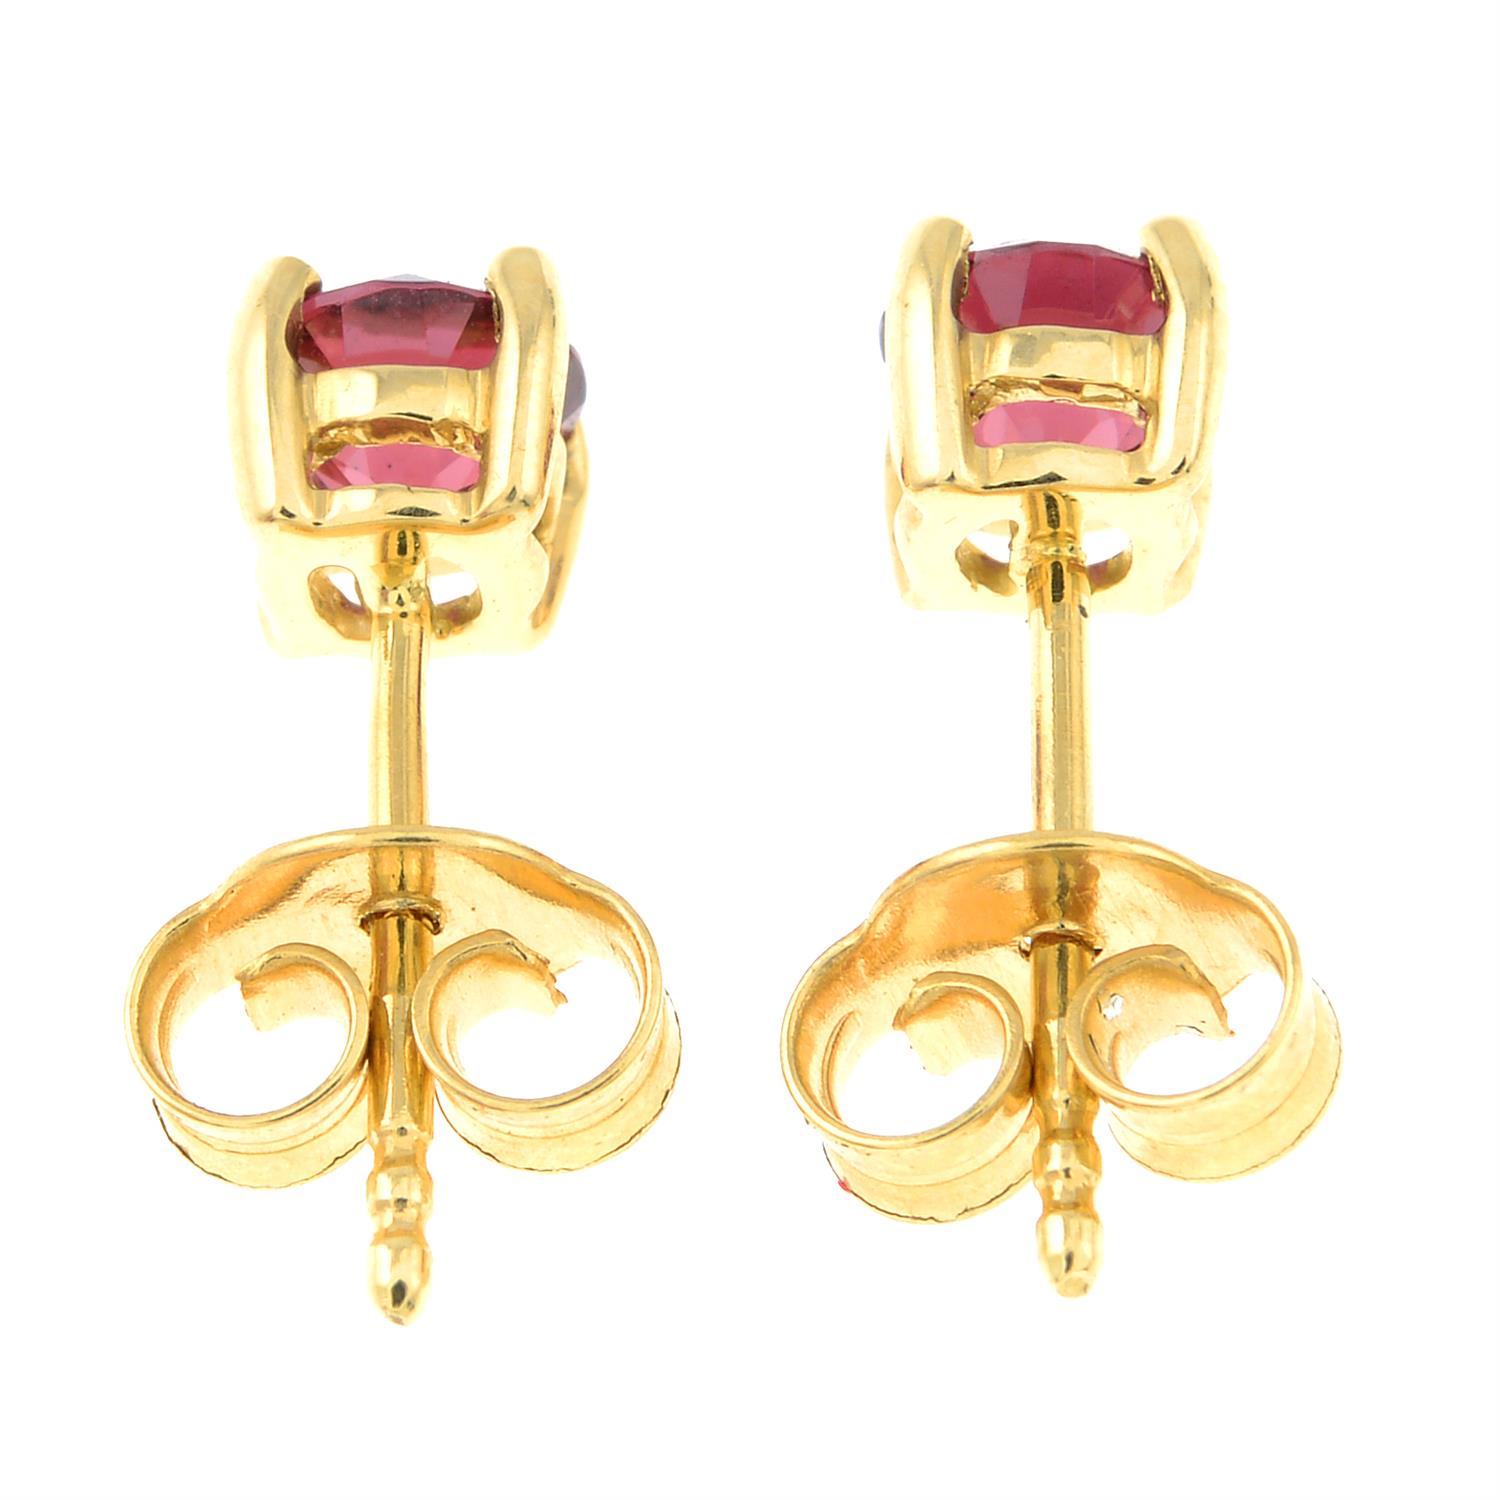 A pair of rhodolite garnet stud earrings. - Image 2 of 2